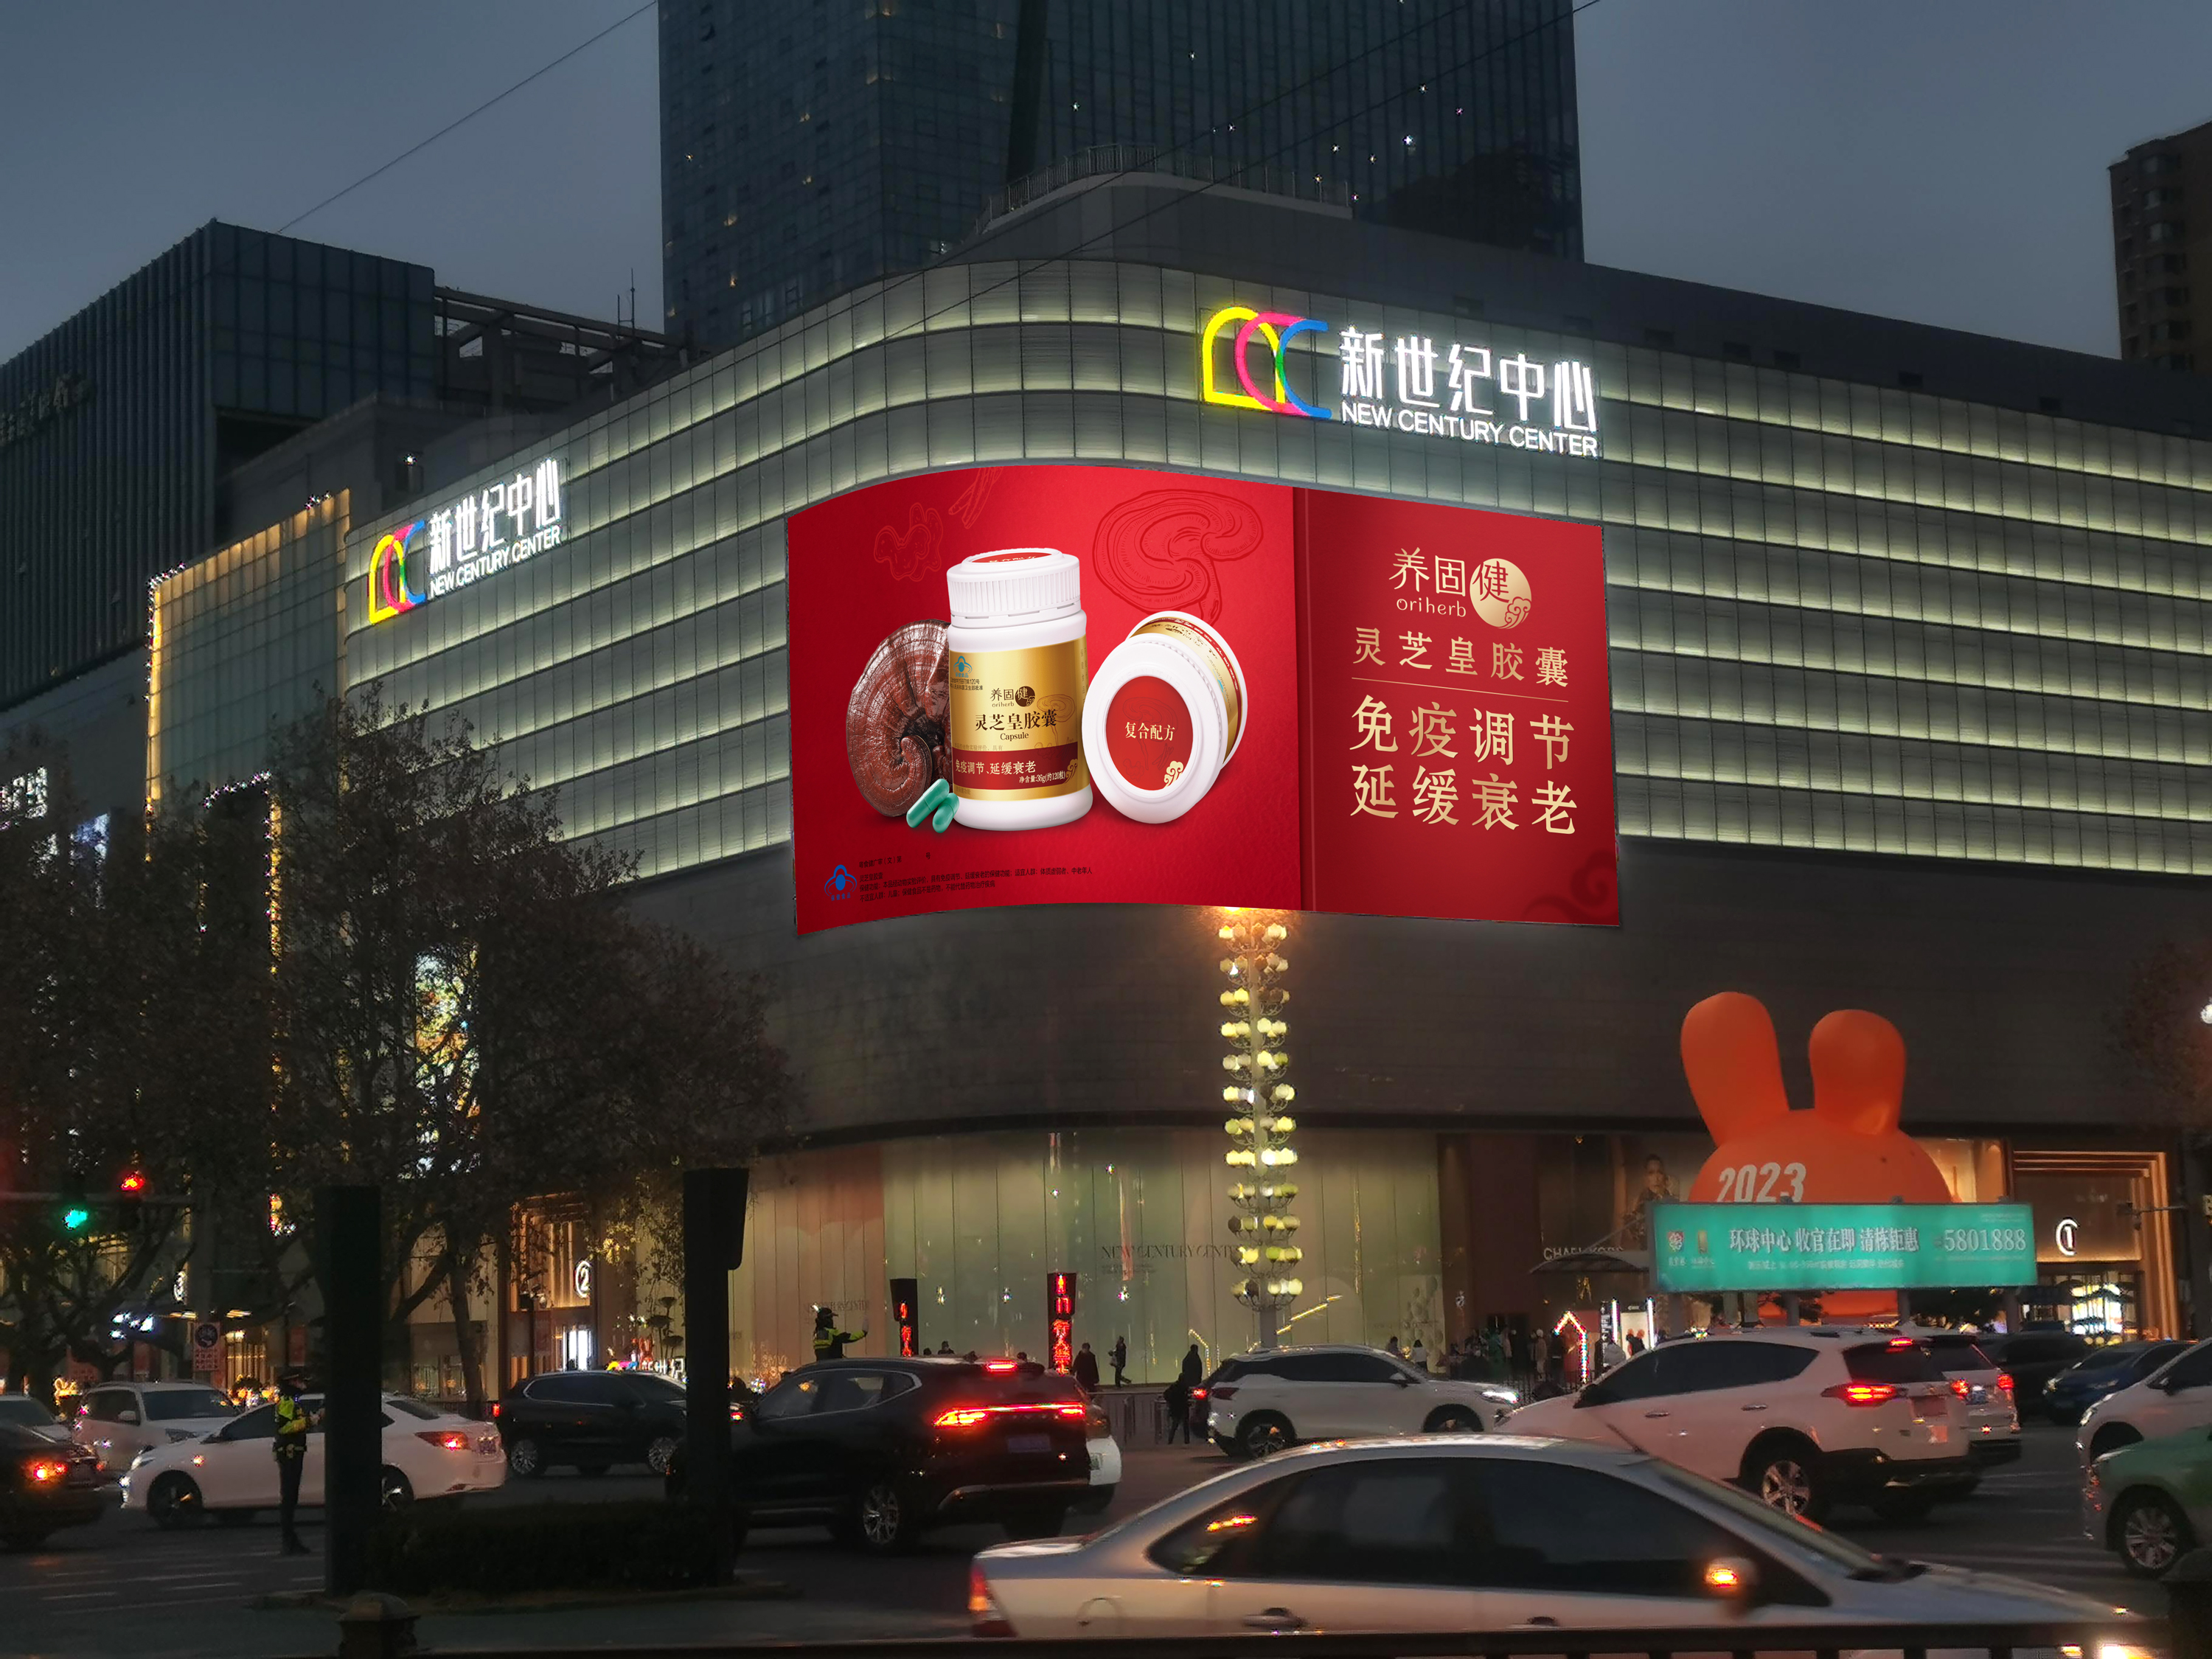 9 邯郸-新世纪广场LED